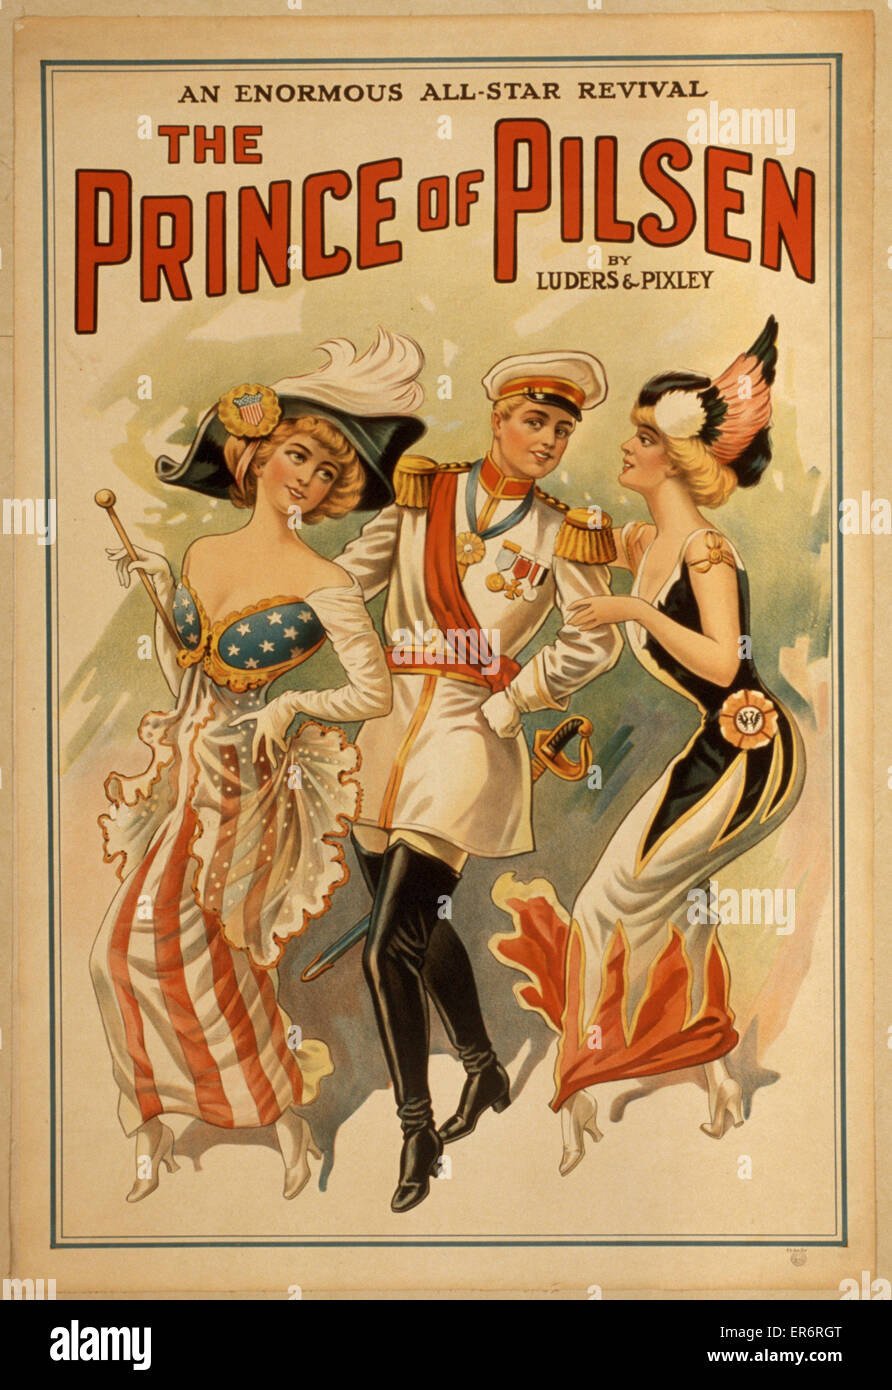 El Príncipe de Pilsen de Luders & Pixley : un enorme todo-st Foto de stock